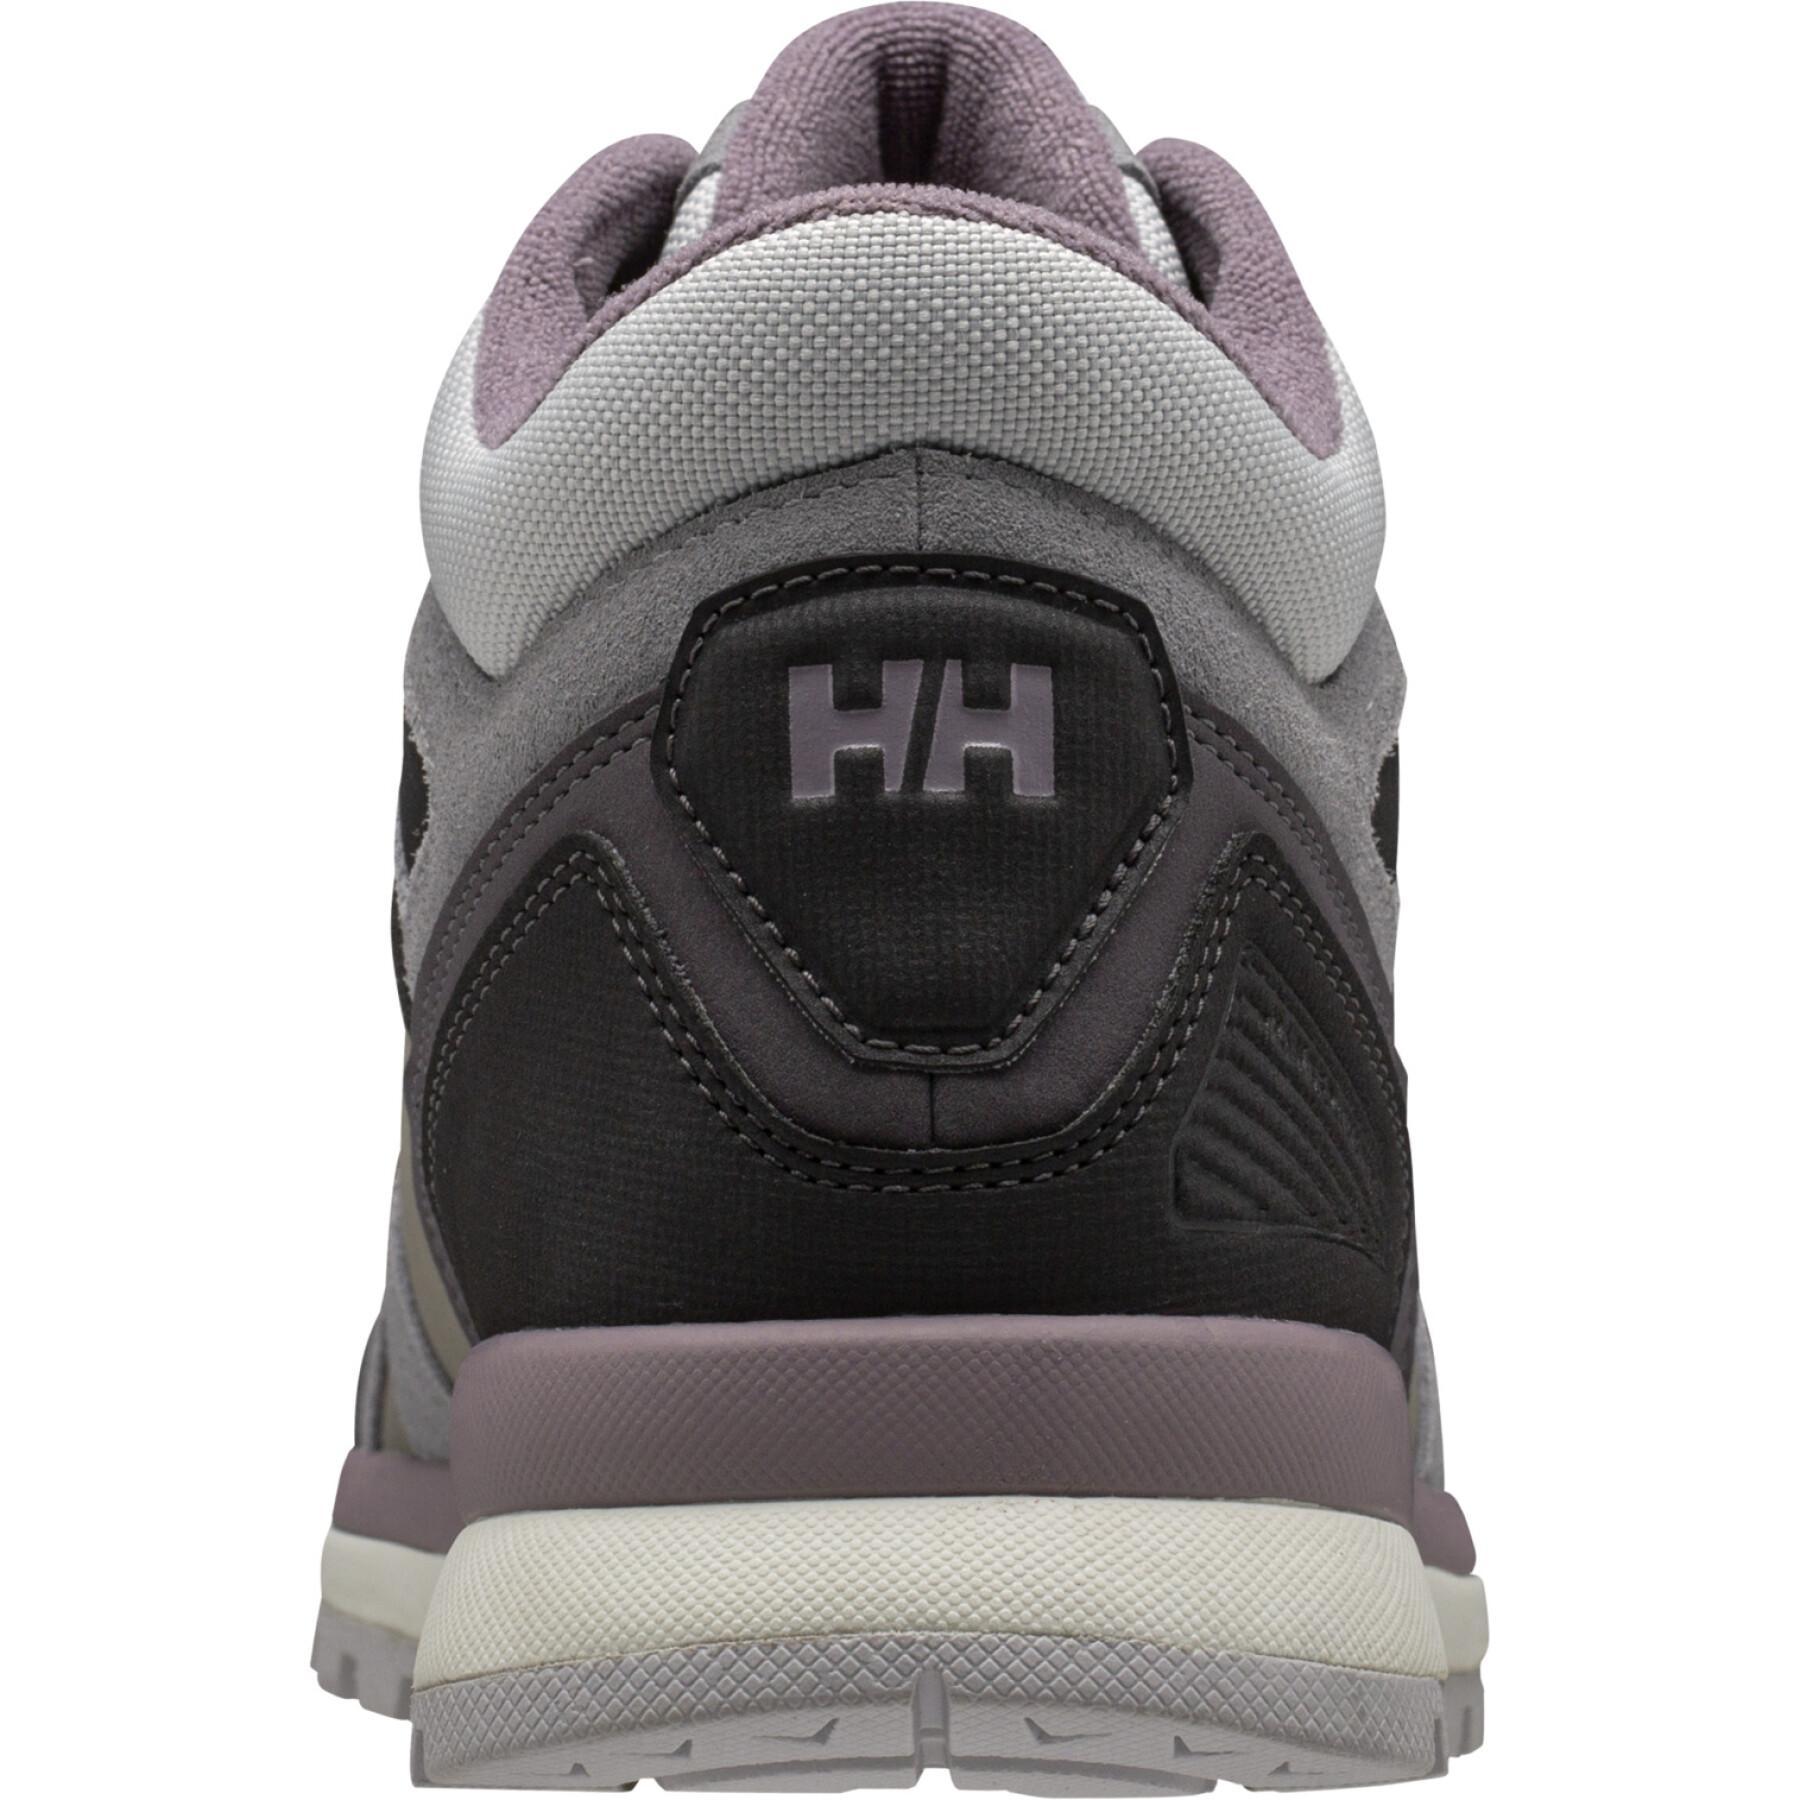 Chaussures de randonnée femme Helly Hansen Ranger LV